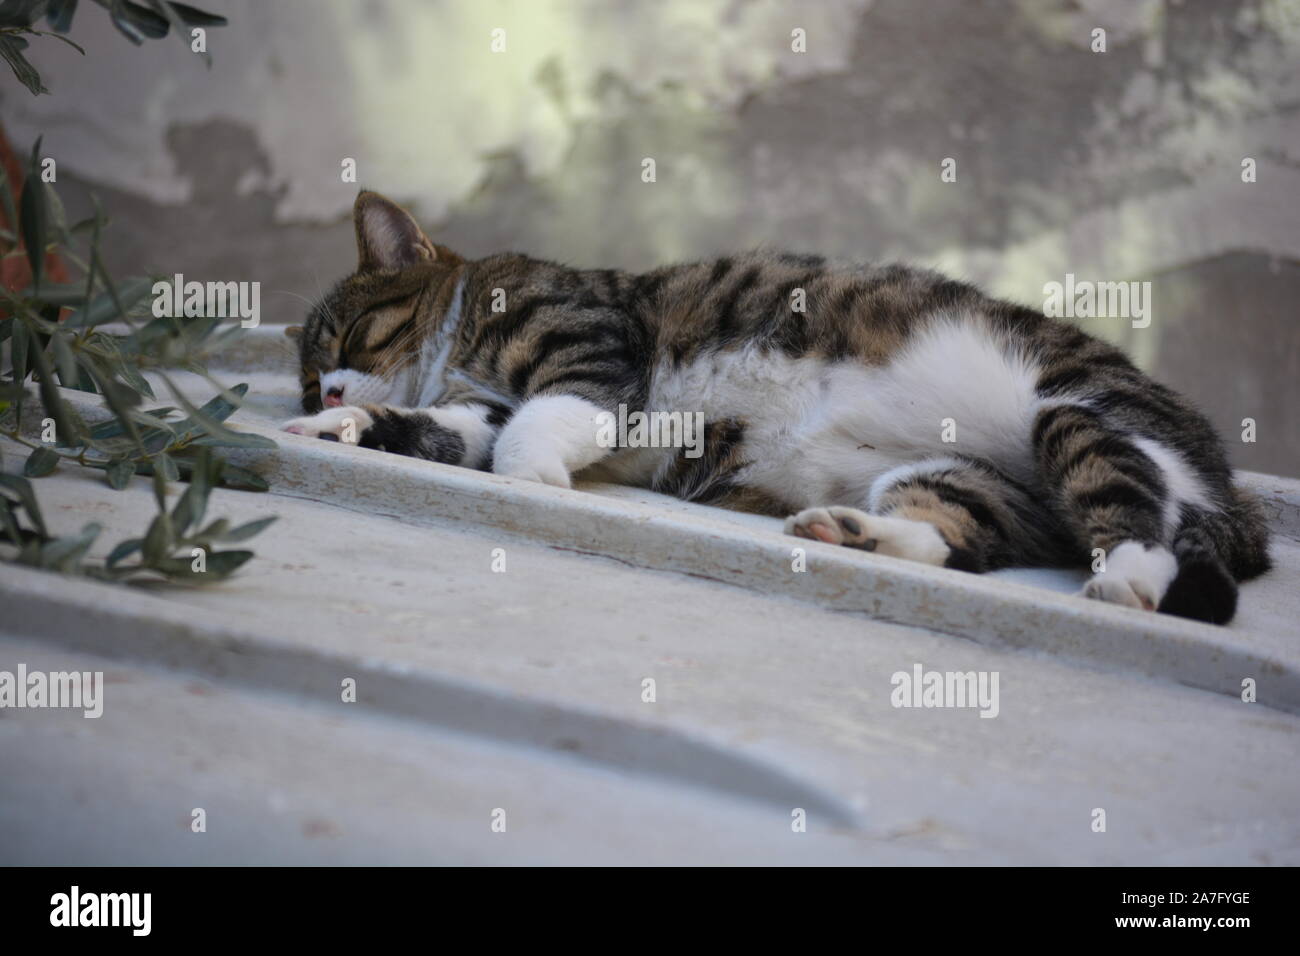 Sleeping cat allongé sur un toit à l'ombre d'un olivier Banque D'Images